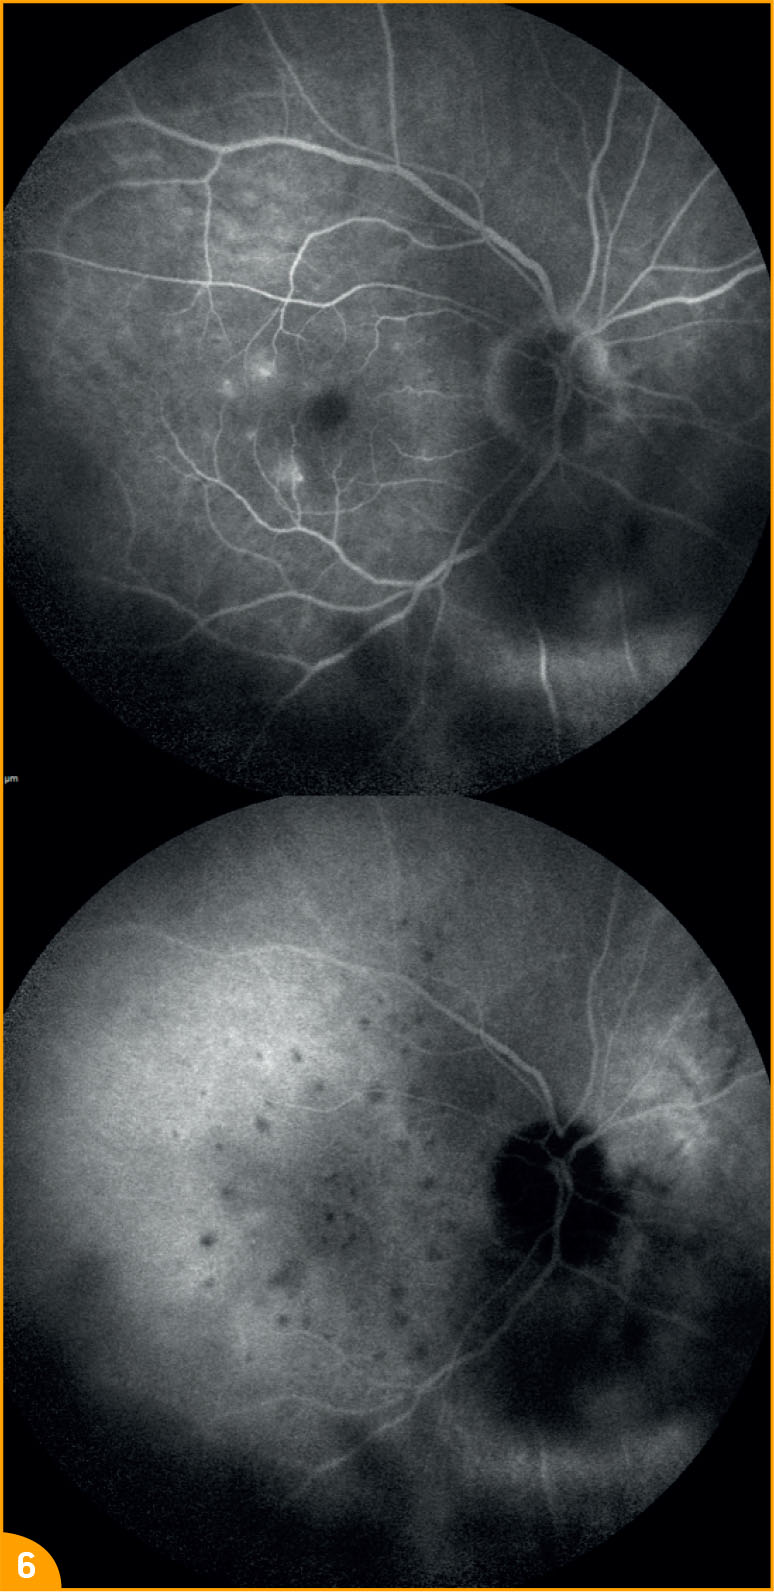 Lymphome intra-oculaire bilatéral - Figure 6